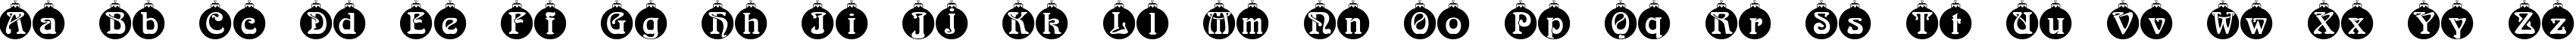 Пример написания английского алфавита шрифтом Christbaumkugeln